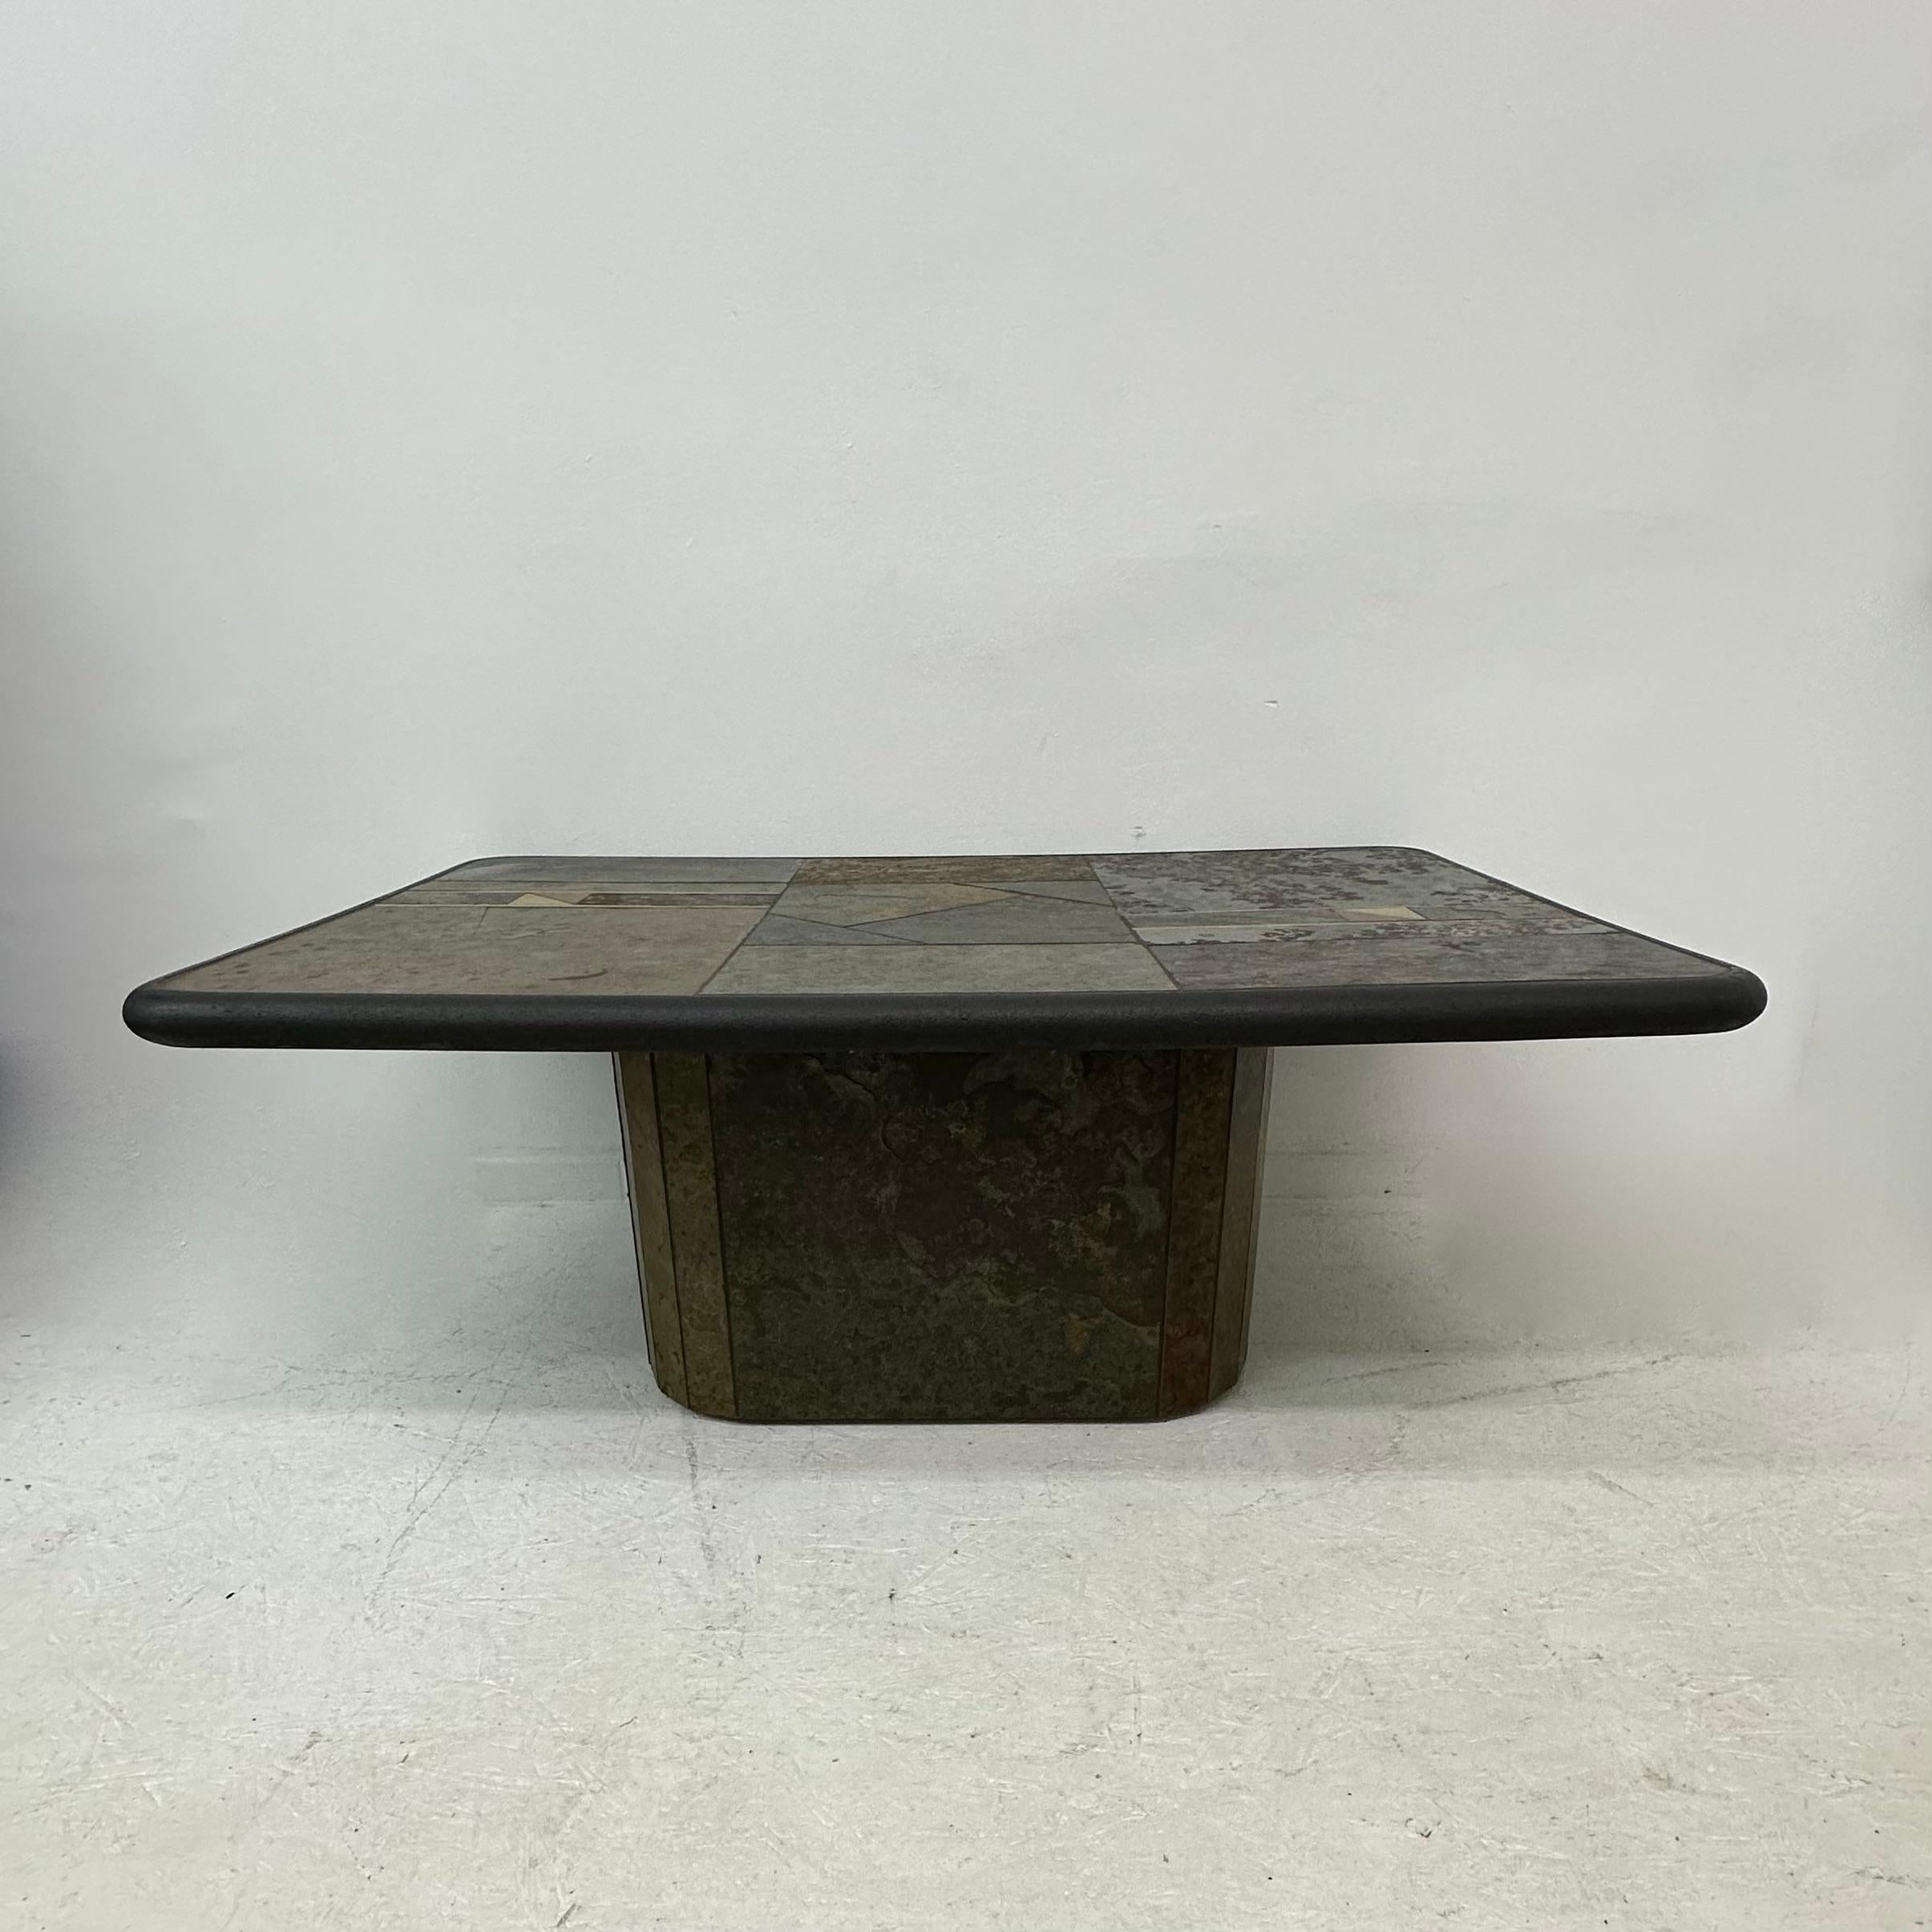 Table basse brutaliste en pierre naturelle, années 1970

Dimensions : 120 cm L, 80cm D, 46,5cm H
Condit : Bon
Période : 1970's